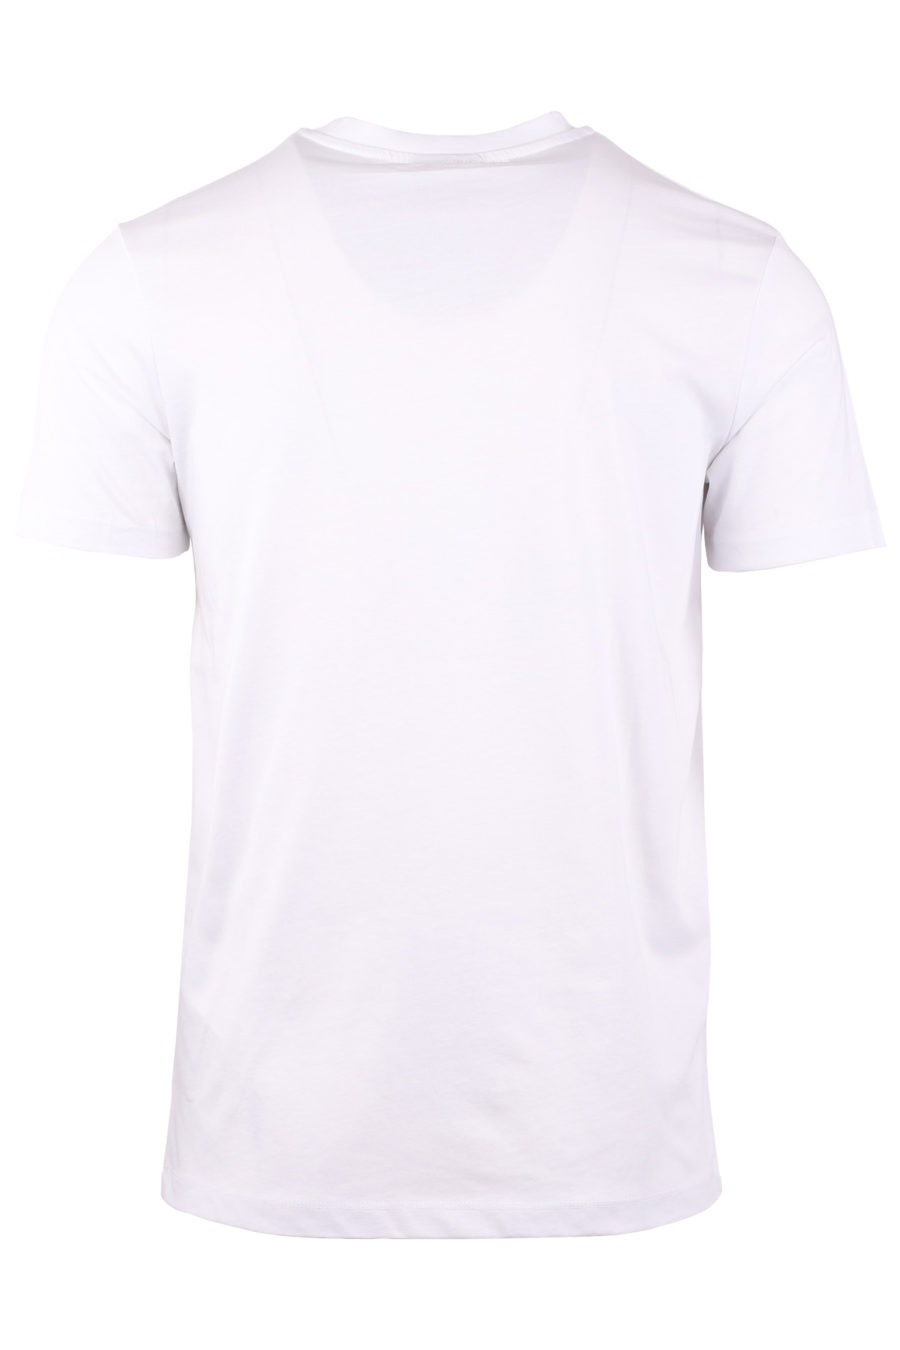 Camiseta blanca con multilogo negro - 7c9b99bce04ce7e77ab9e668abf36470a0b842dc